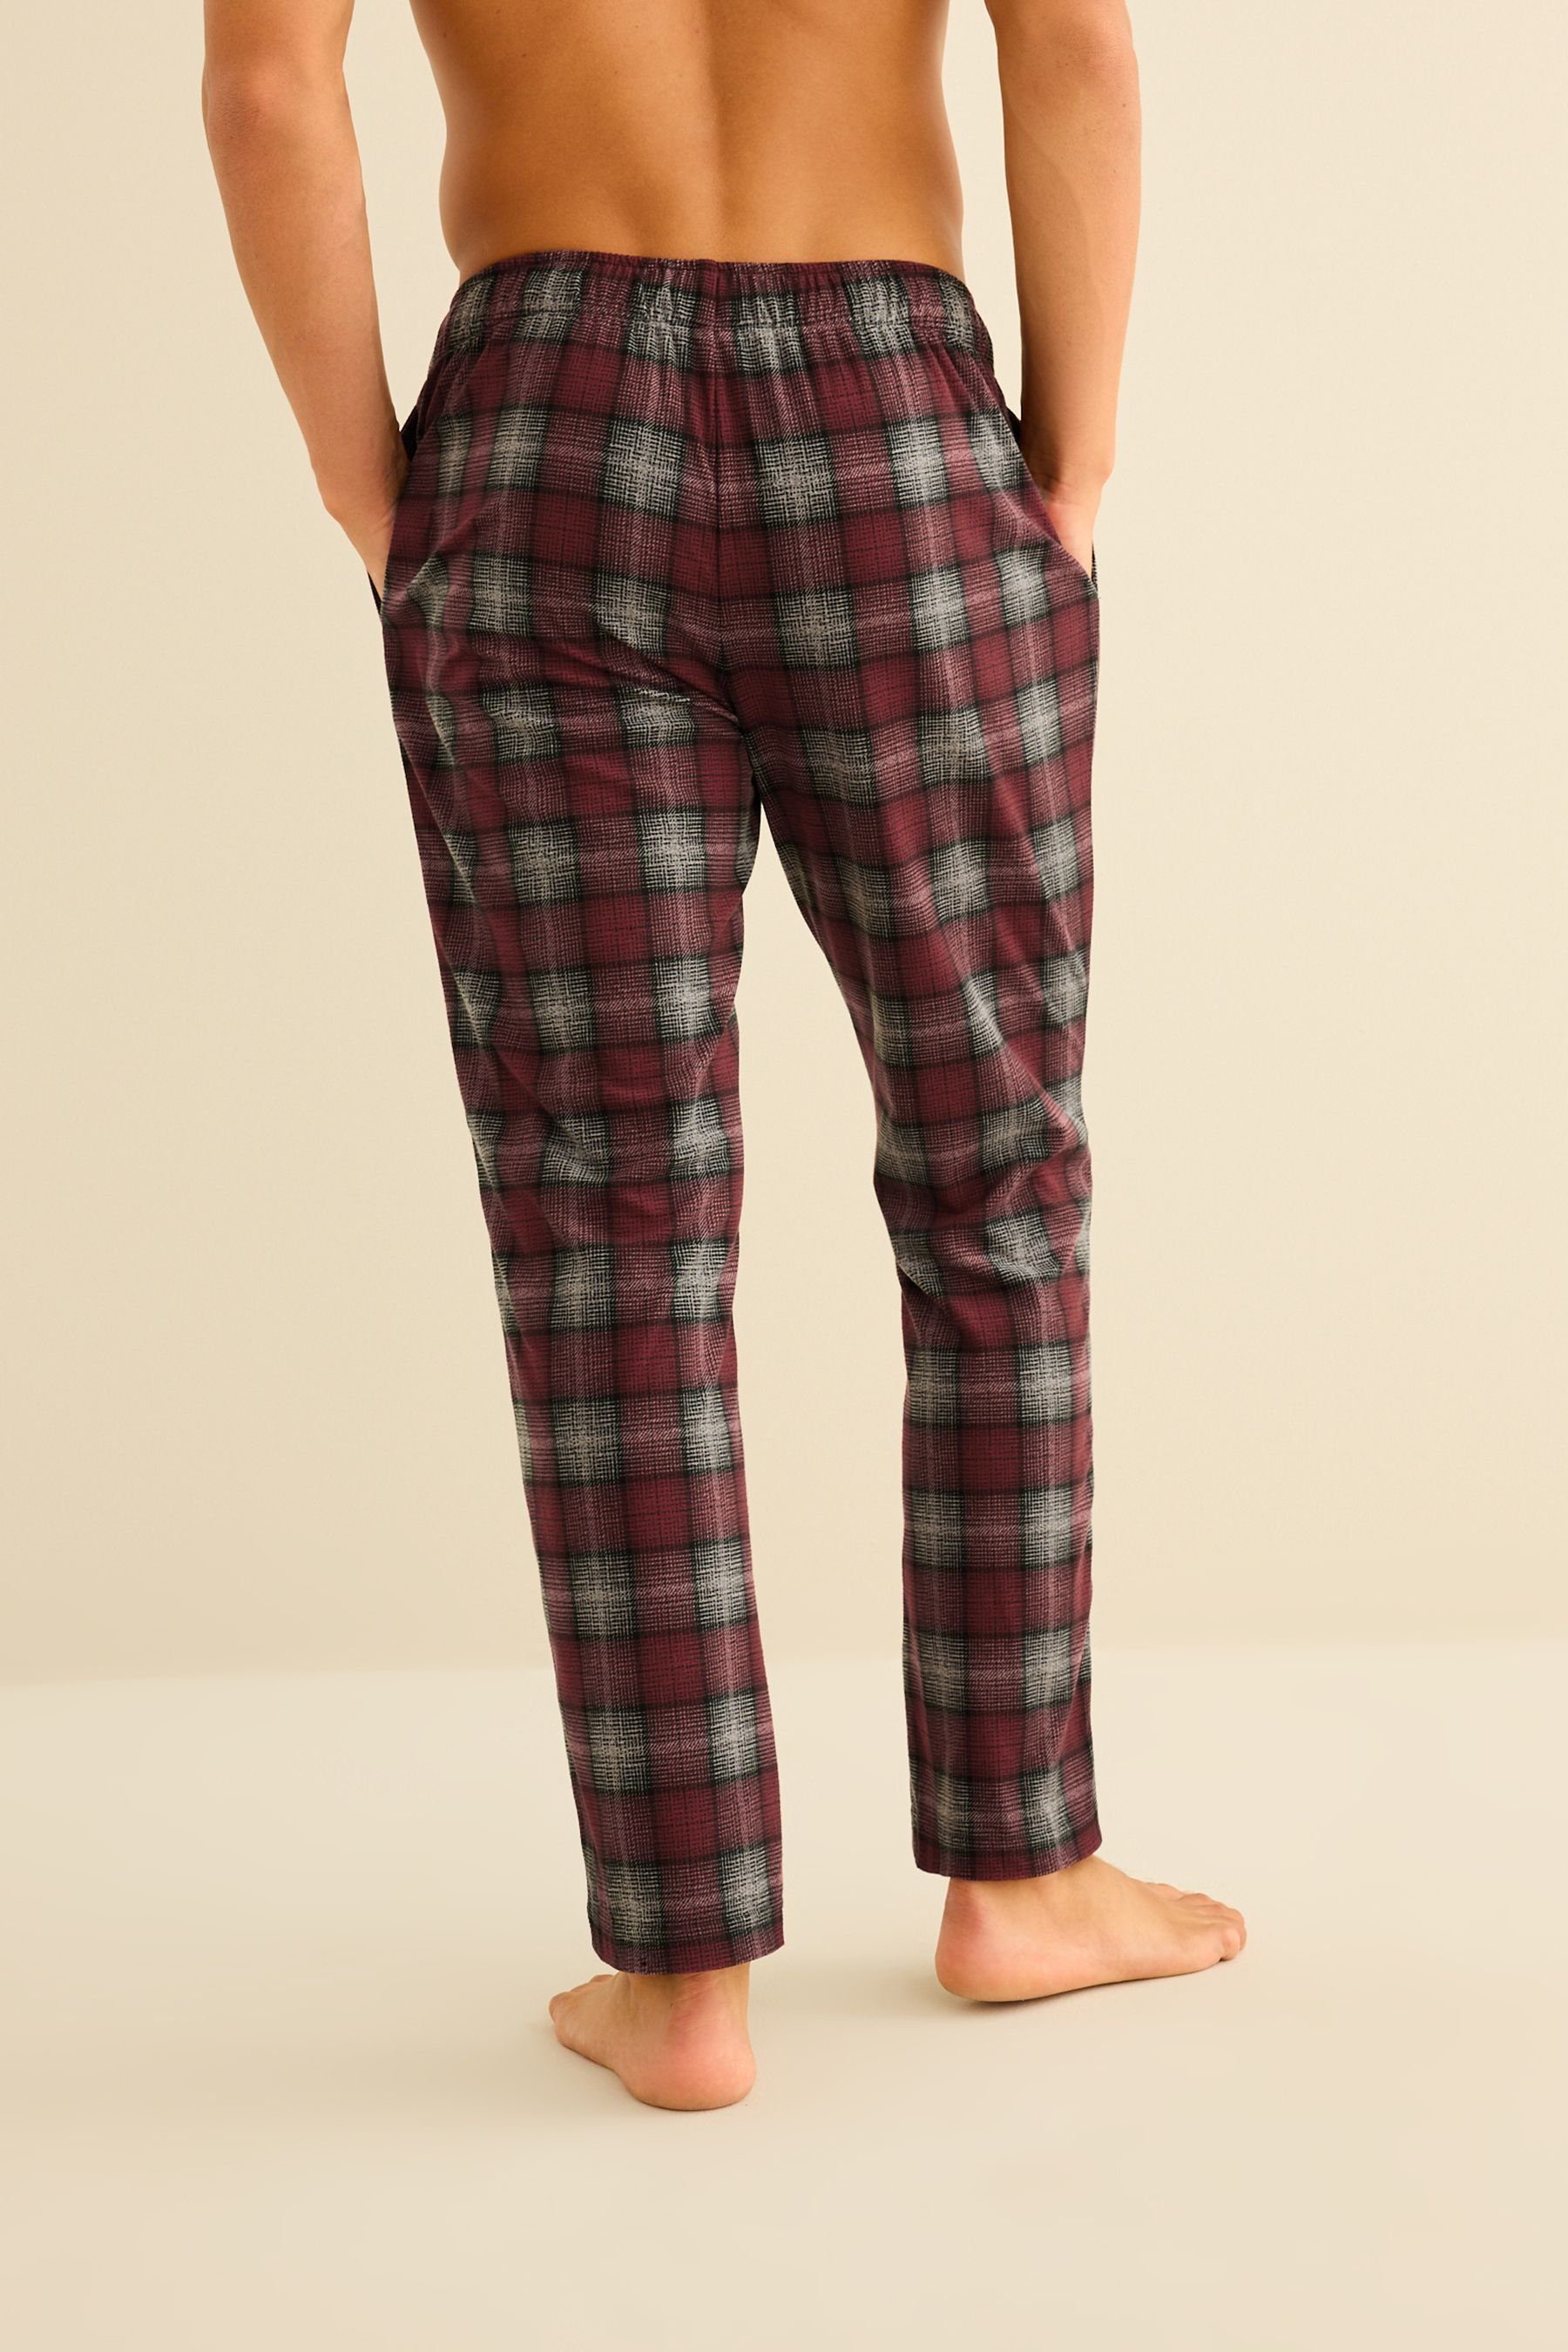 Next Pyjamahose Motion Flex Red (1-tlg) gemütliche Schlafanzughose Check